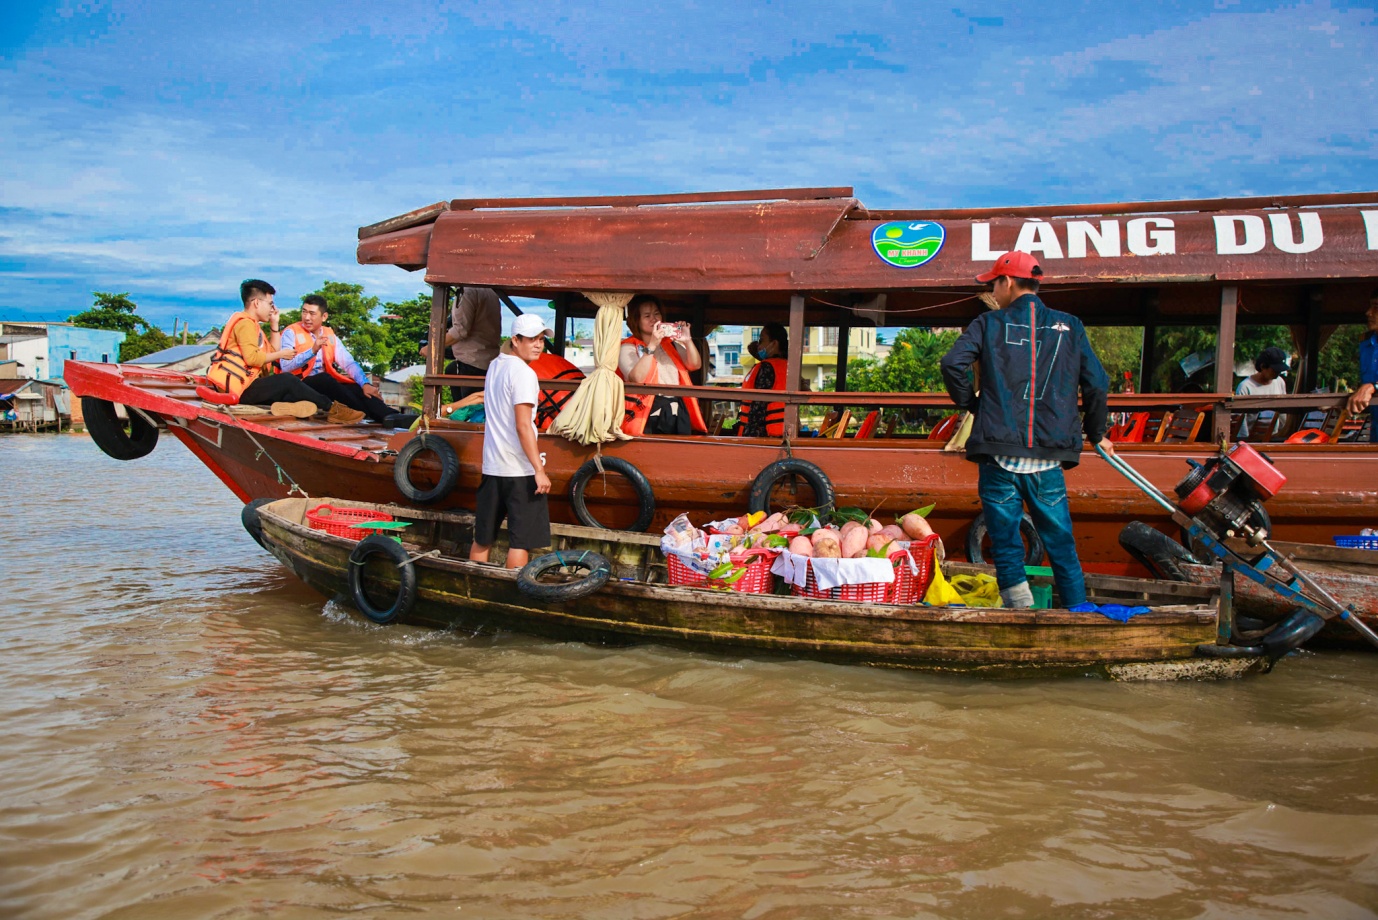 Nối tour liên tỉnh, người Sài Gòn sắp được đi du ngoạn sông nước Cửu Long - 3